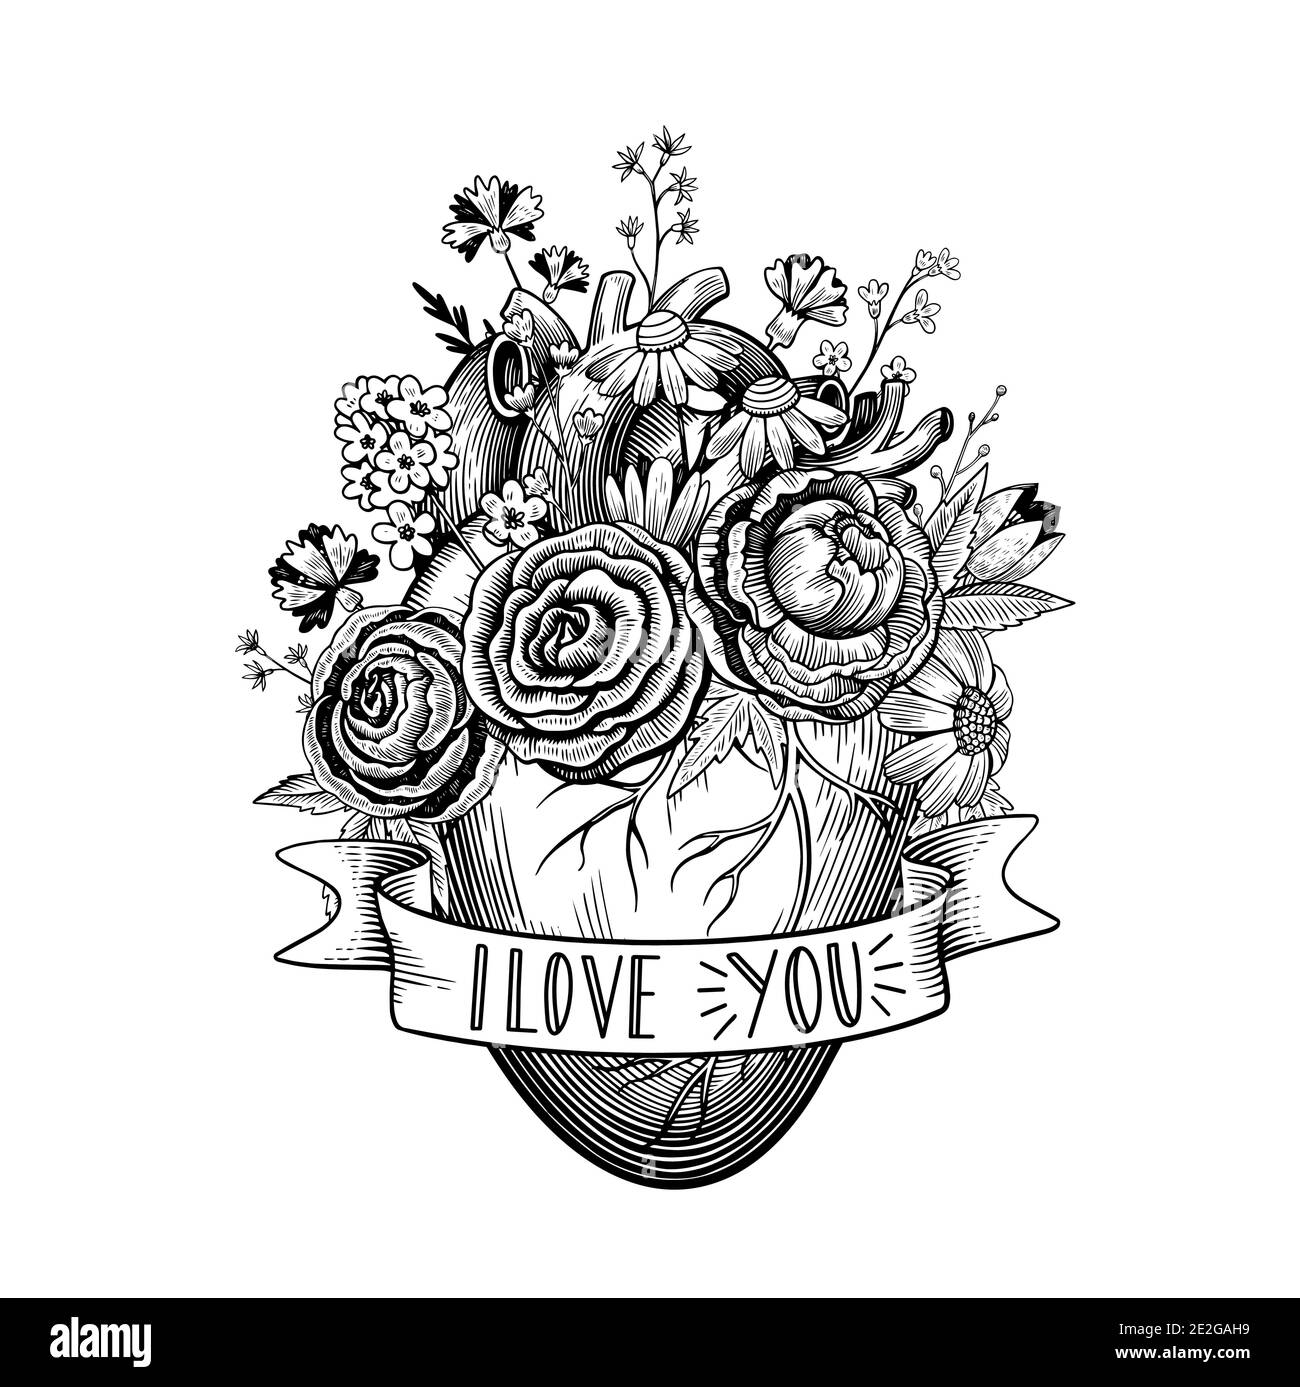 Illustrazione d'epoca del cuore con fiori e nastro in stile tatuaggio. Disegno vettoriale in bianco e nero. Illustrazione Vettoriale